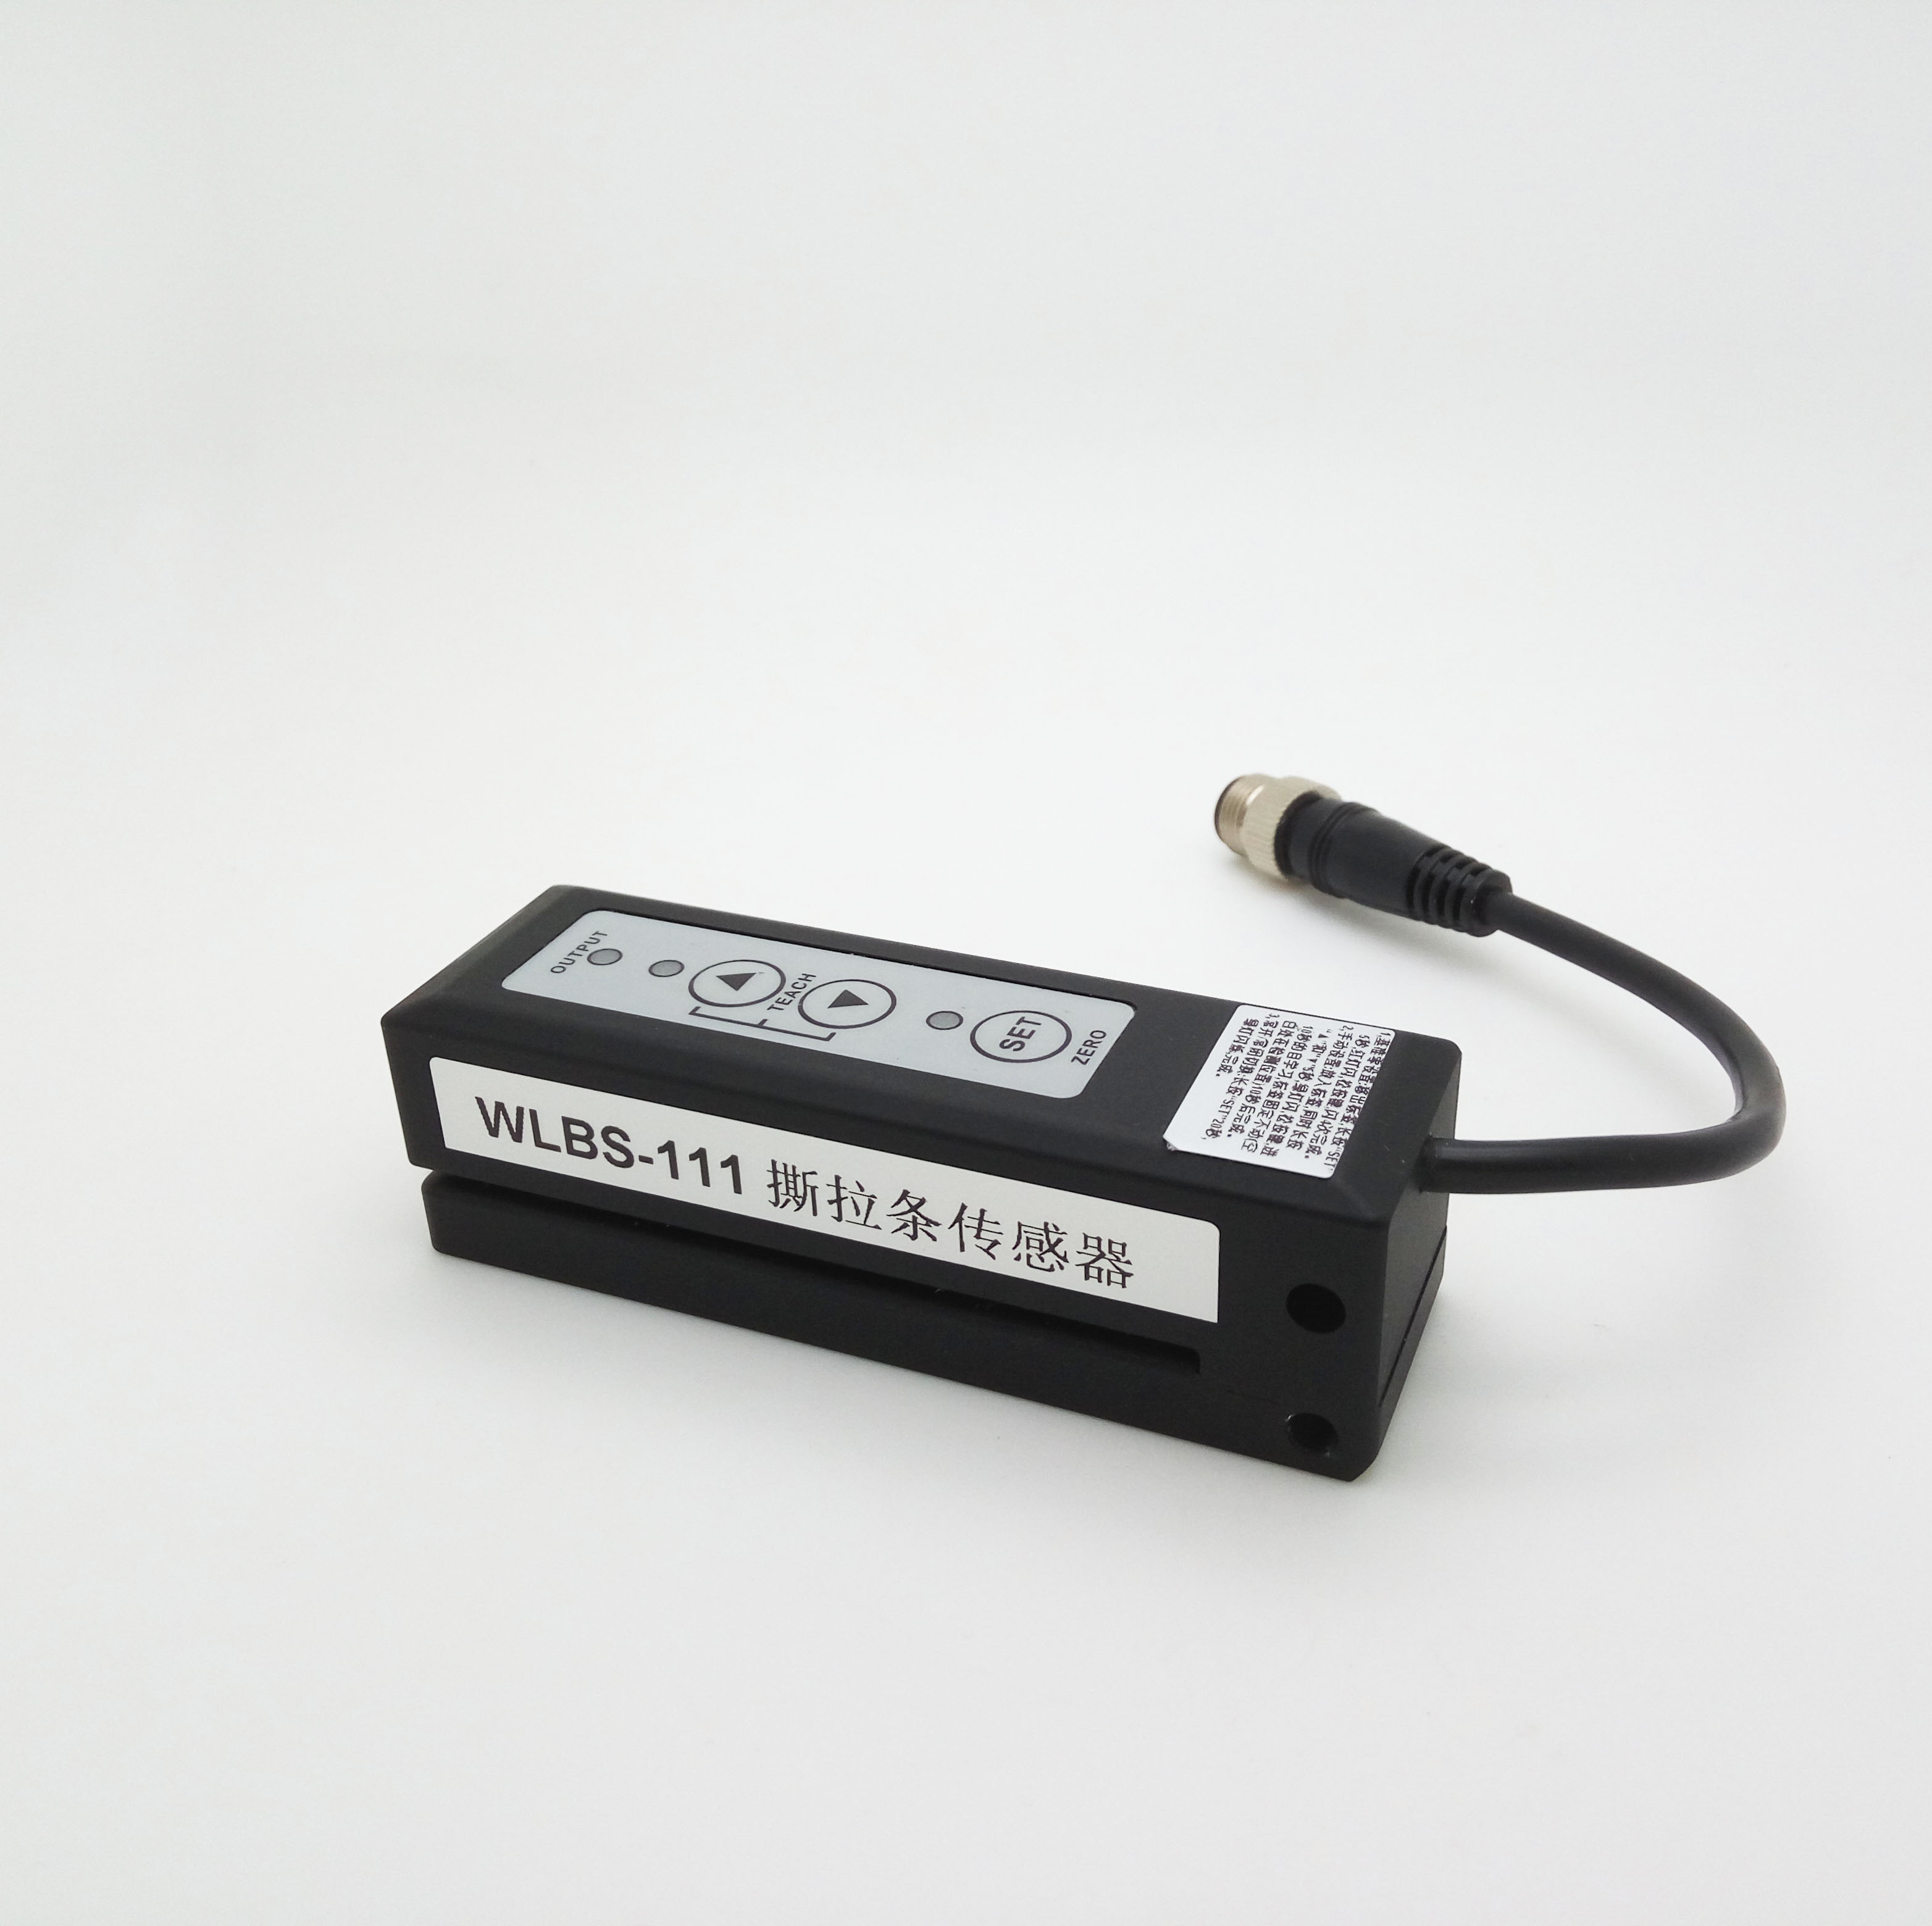 厂家直销电容式贴标机槽形电眼 WLBS-111撕拉标签传感器